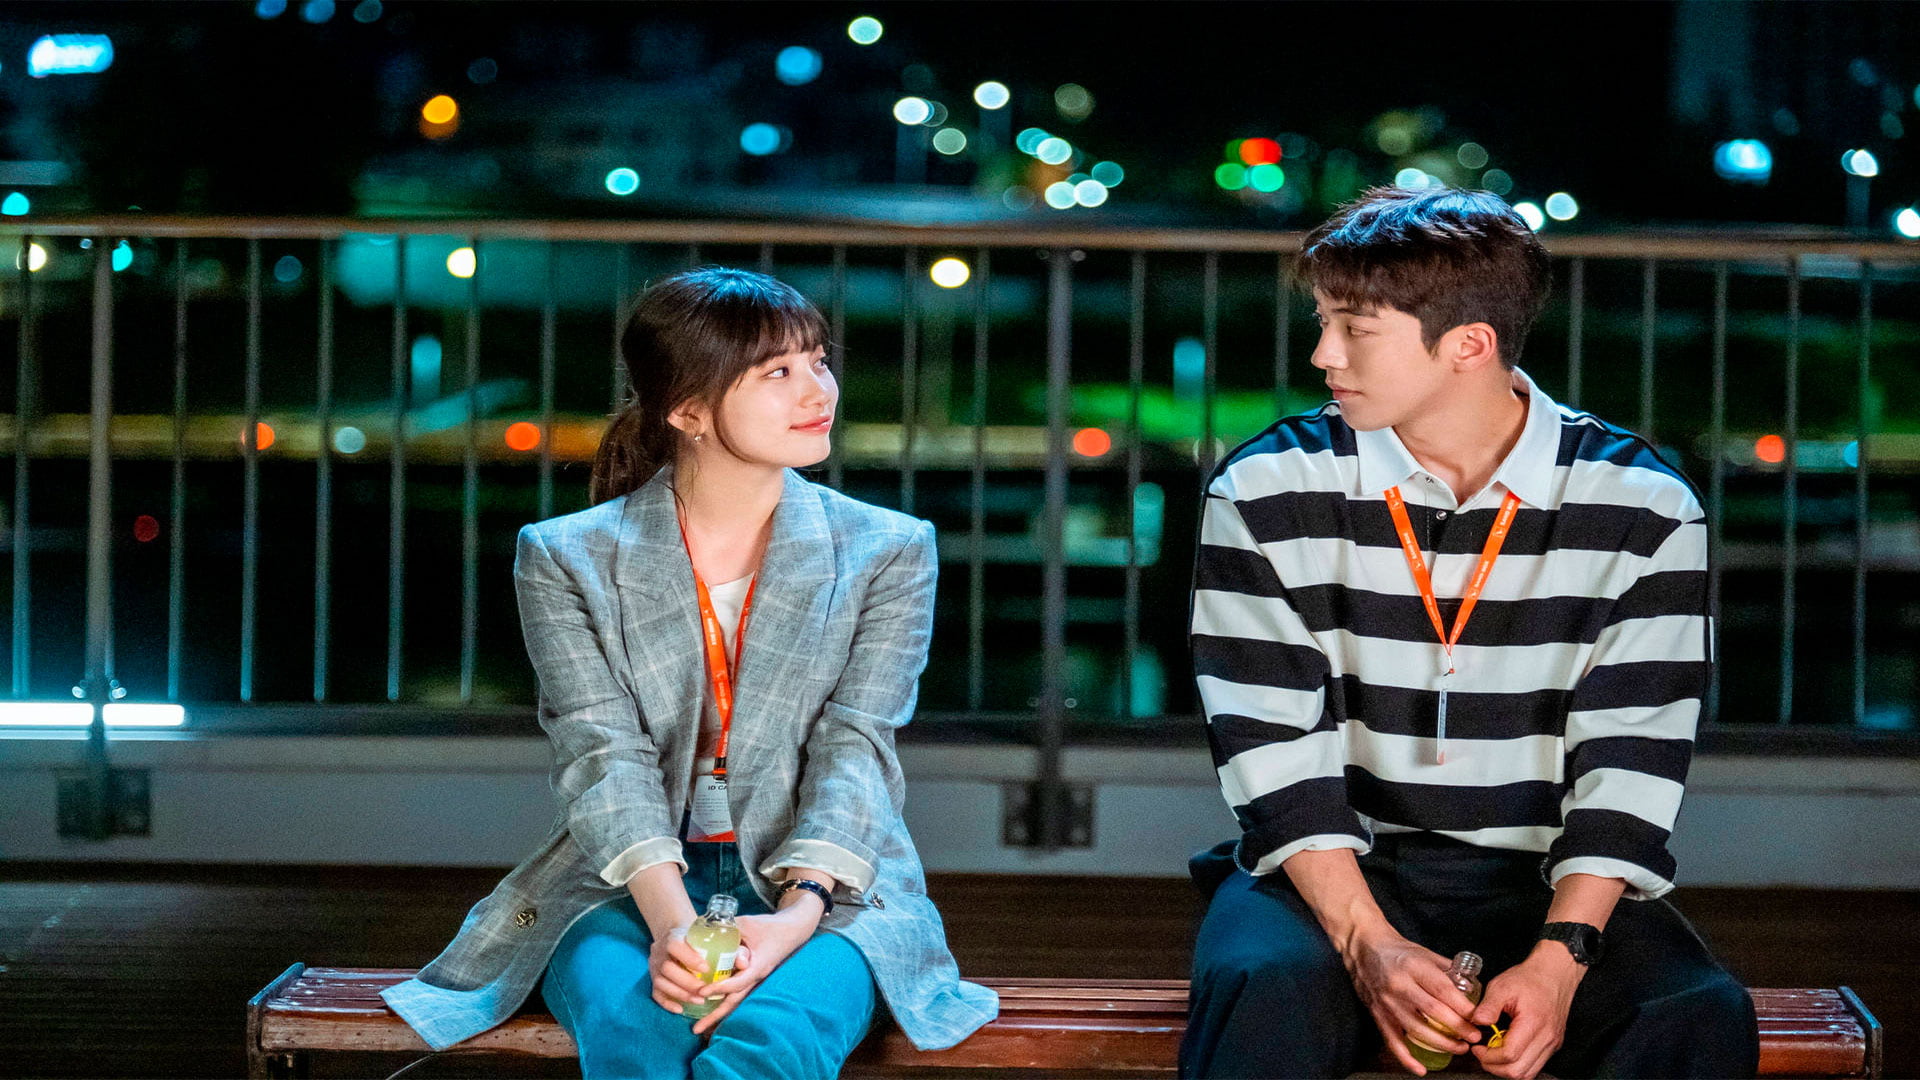 Netflix lançará outros 6 novos dramas coreanos ainda em 2023